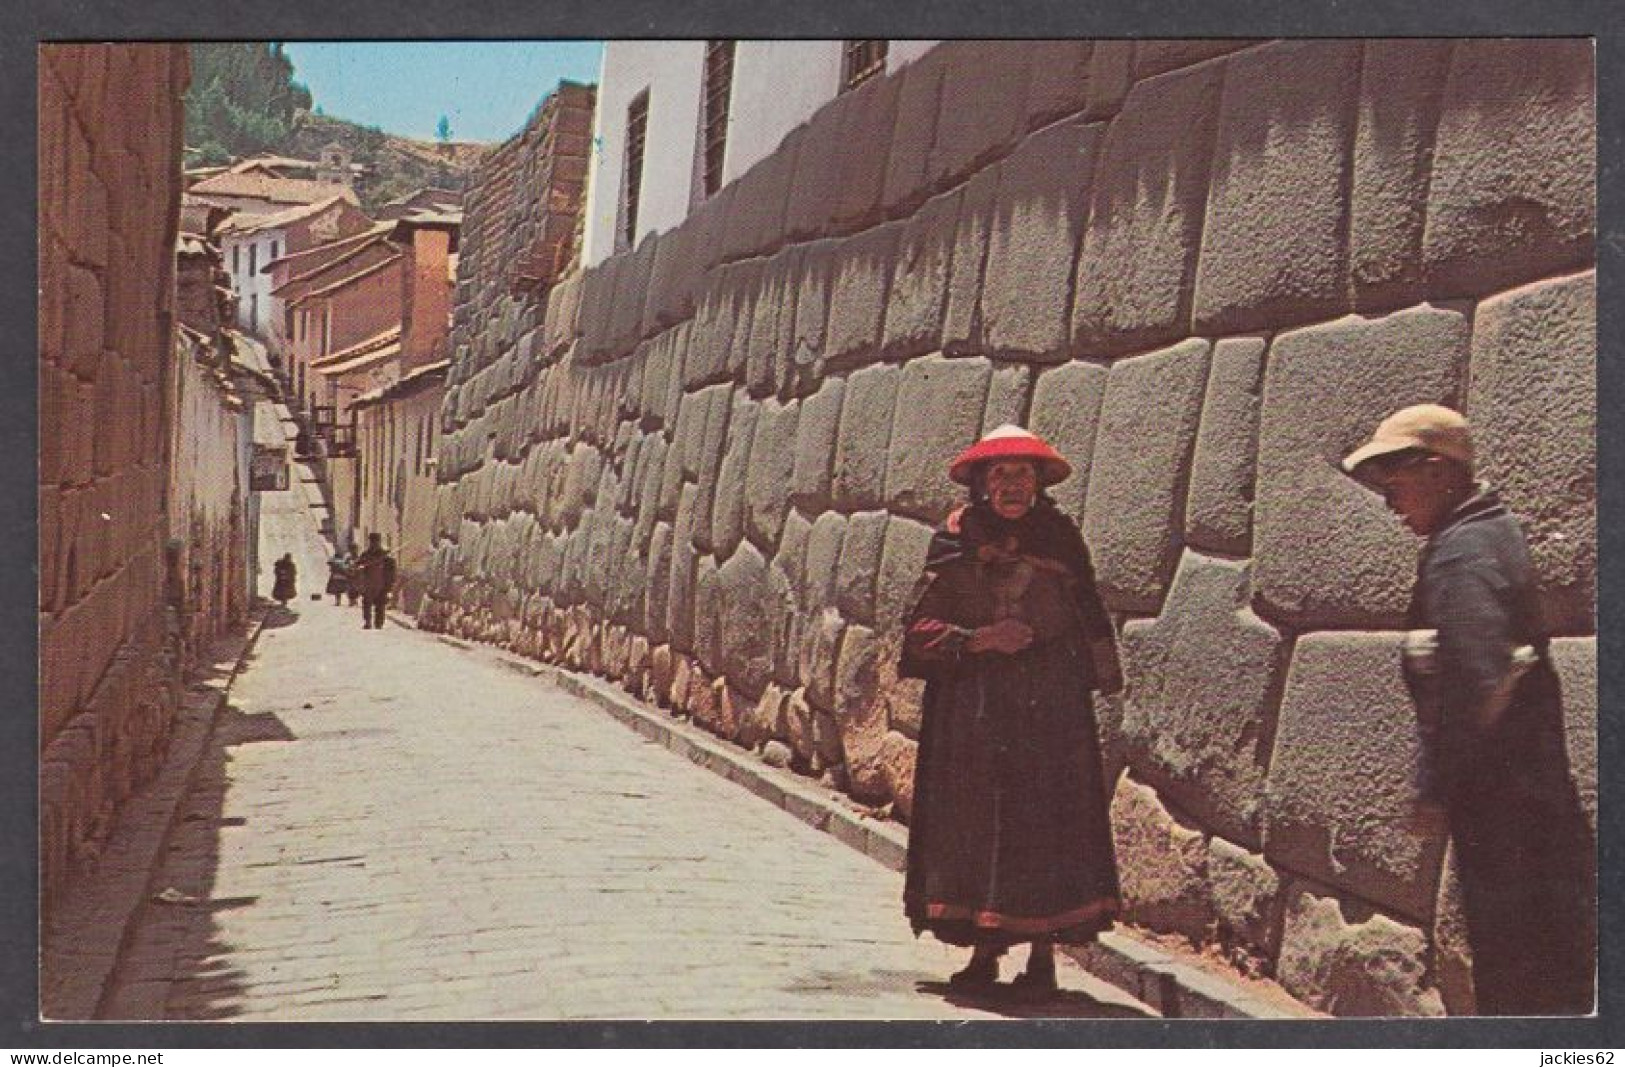 127700/ CUZCO, Typical Inca Street, Calle Hatunrumiyoc - Pérou